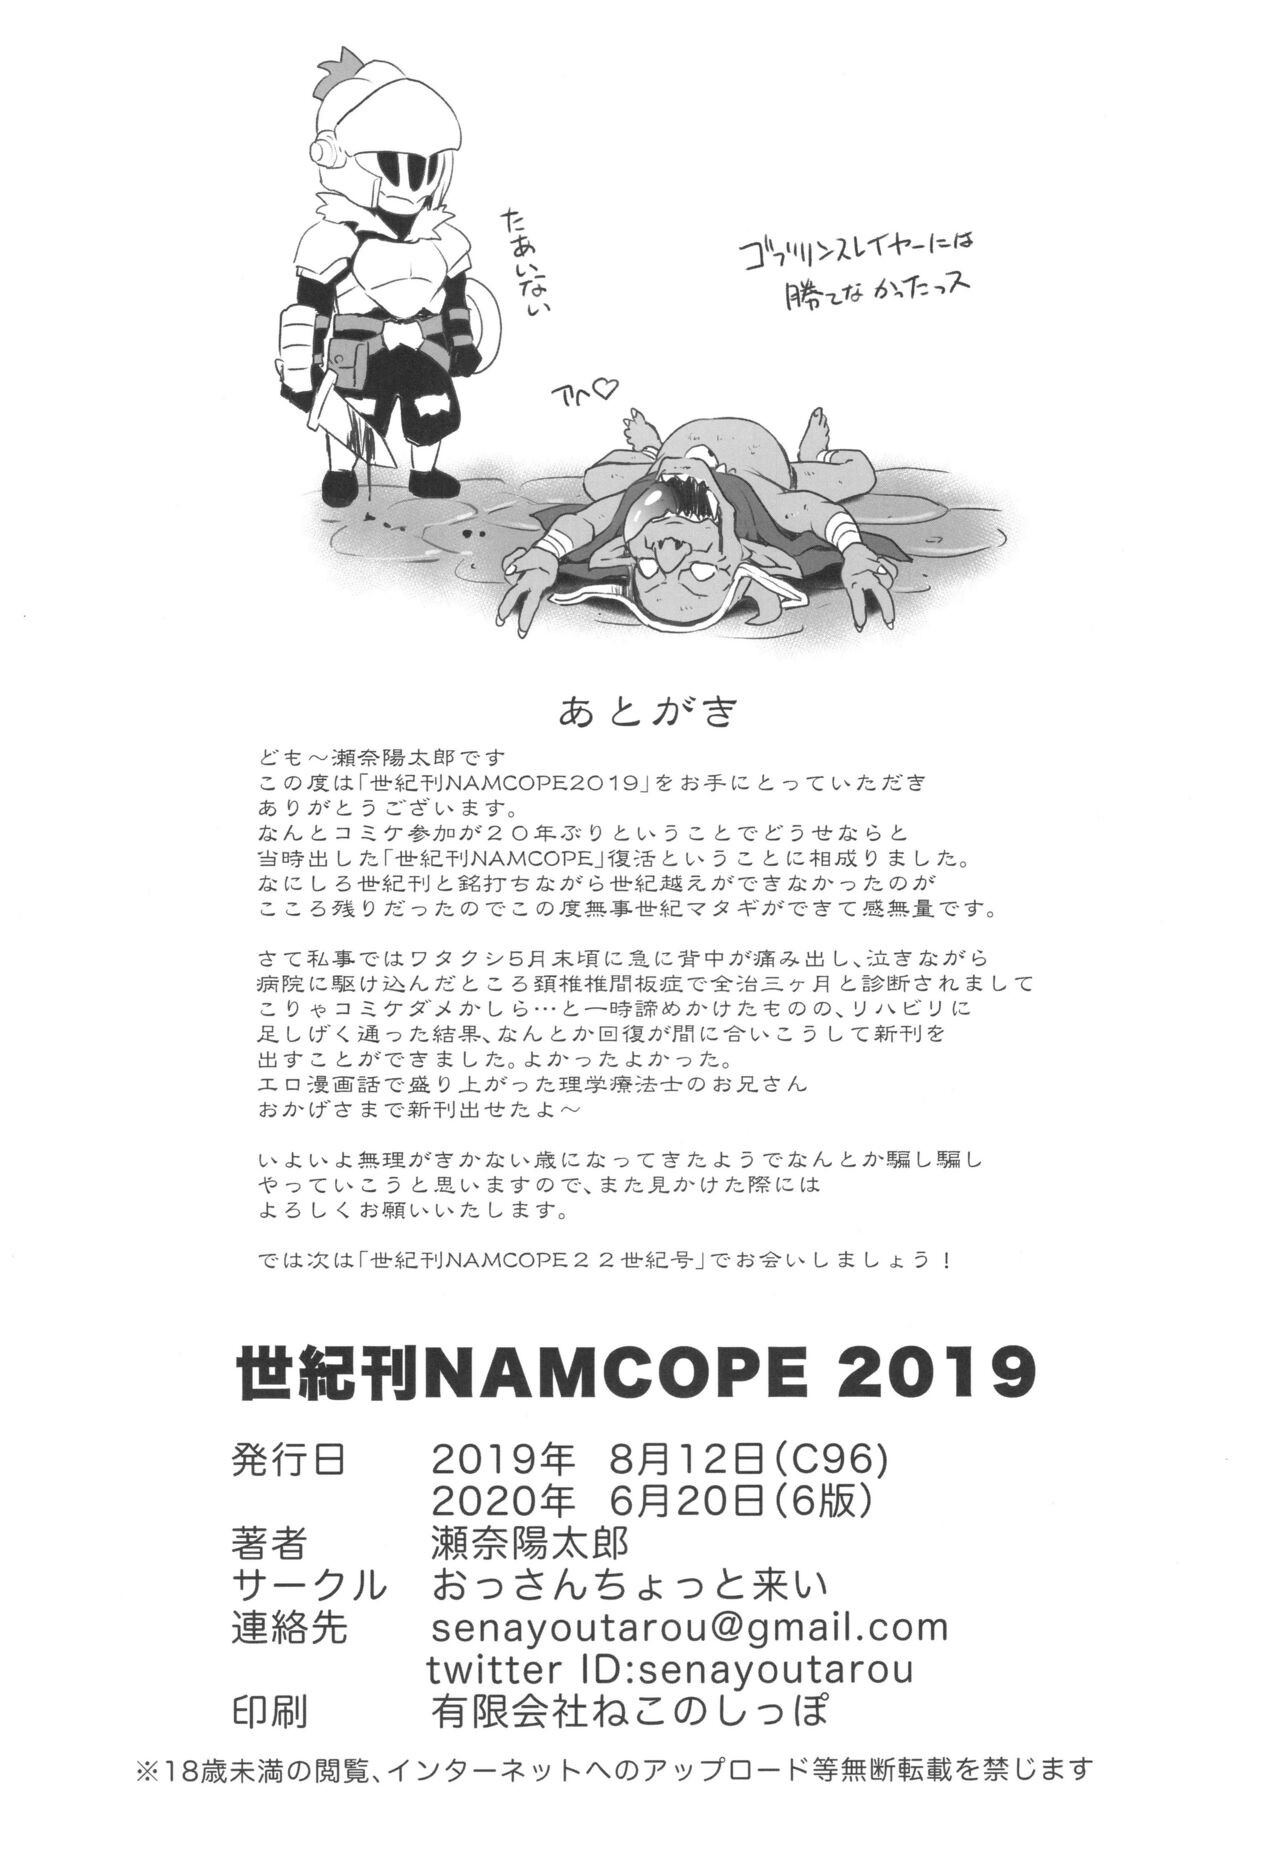 (C96) [おっさんちょっと来い (瀬奈陽太郎)] 世紀刊NAMCOPE2019